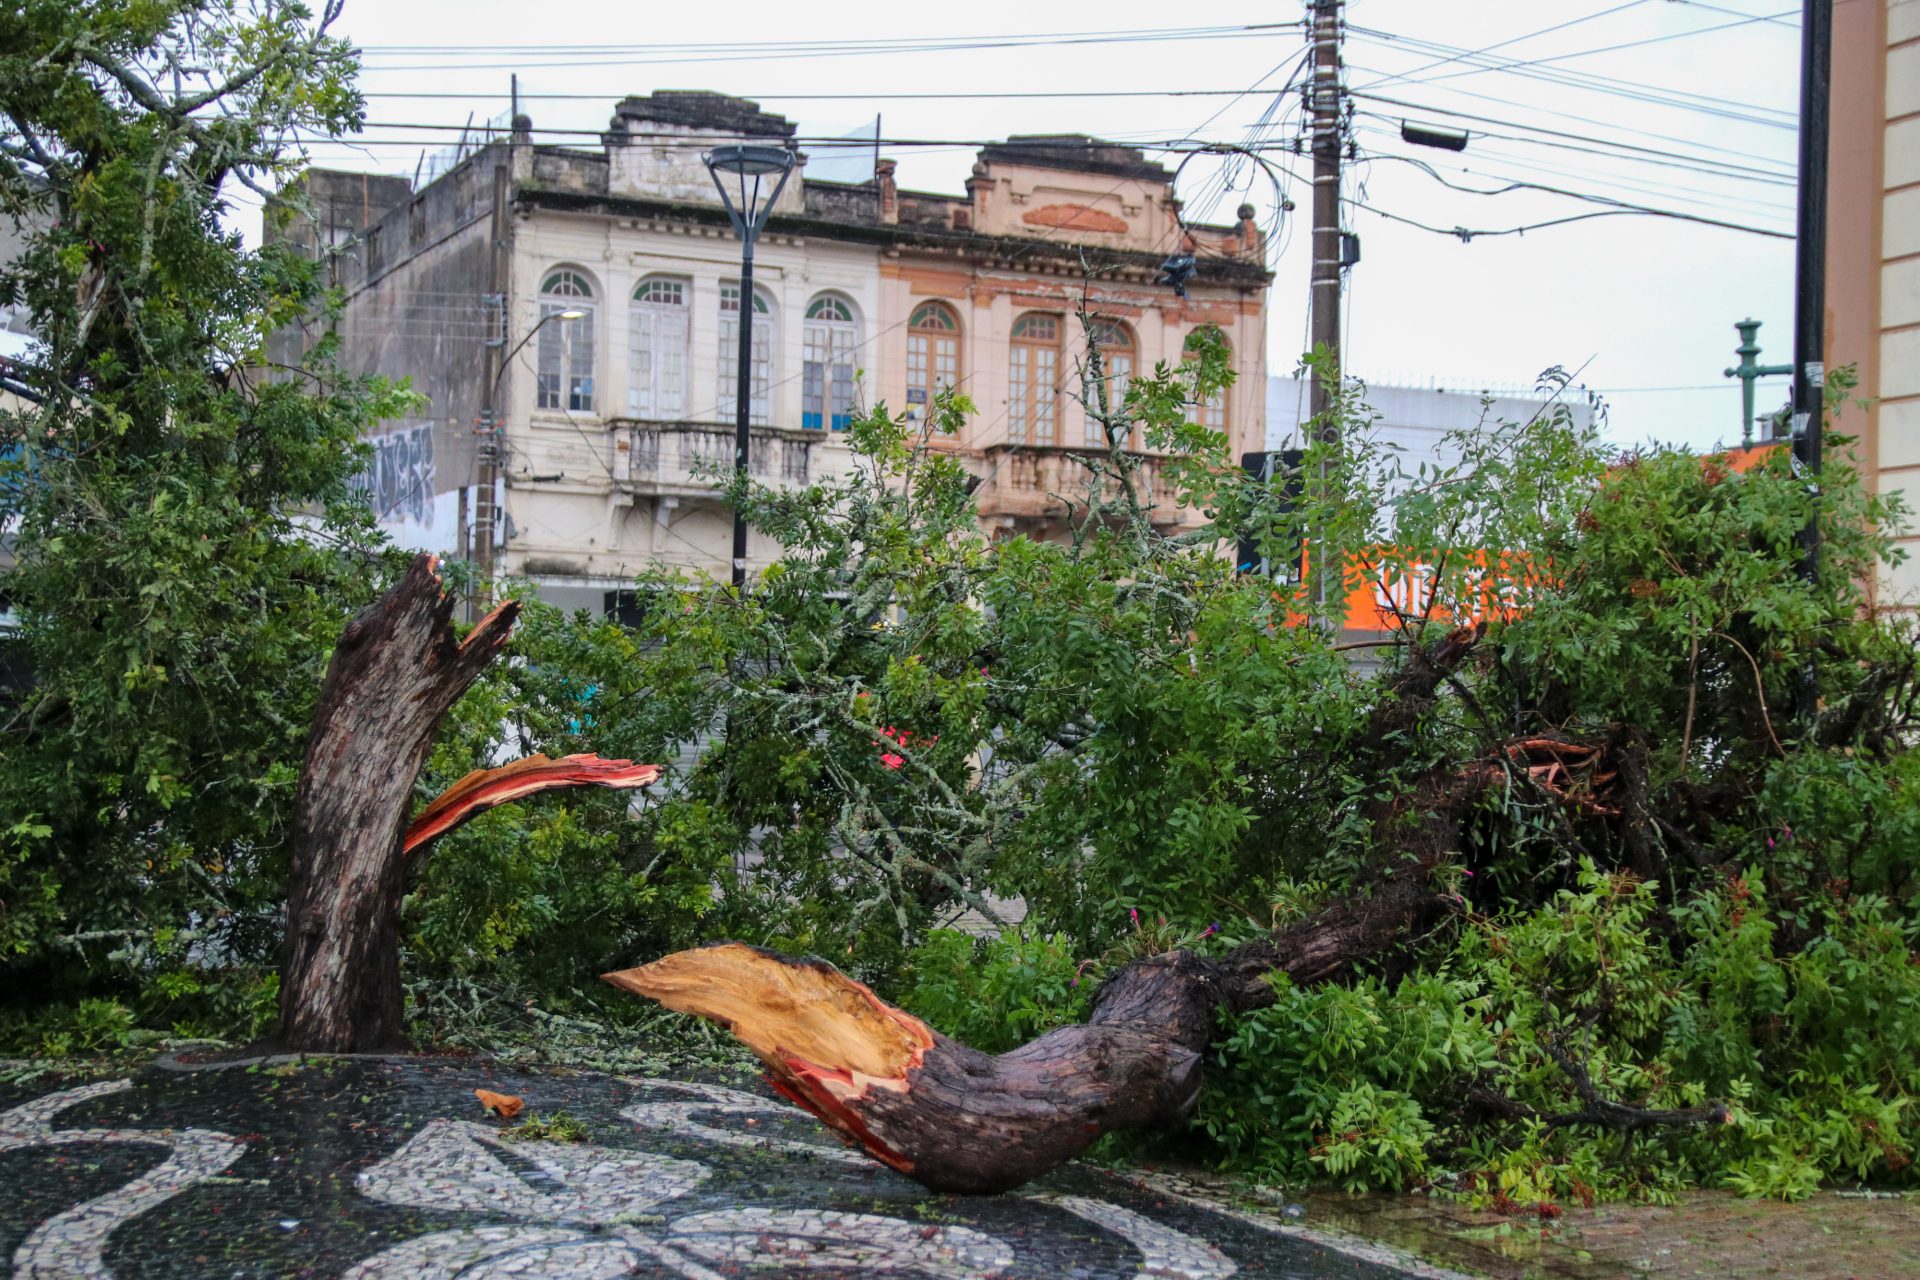 Ciclone que atinge região Sul provoca ventania em São Paulo - Foto: Eduardo Rodrigues/Agência Pixel Press/Estadão Conteúdo